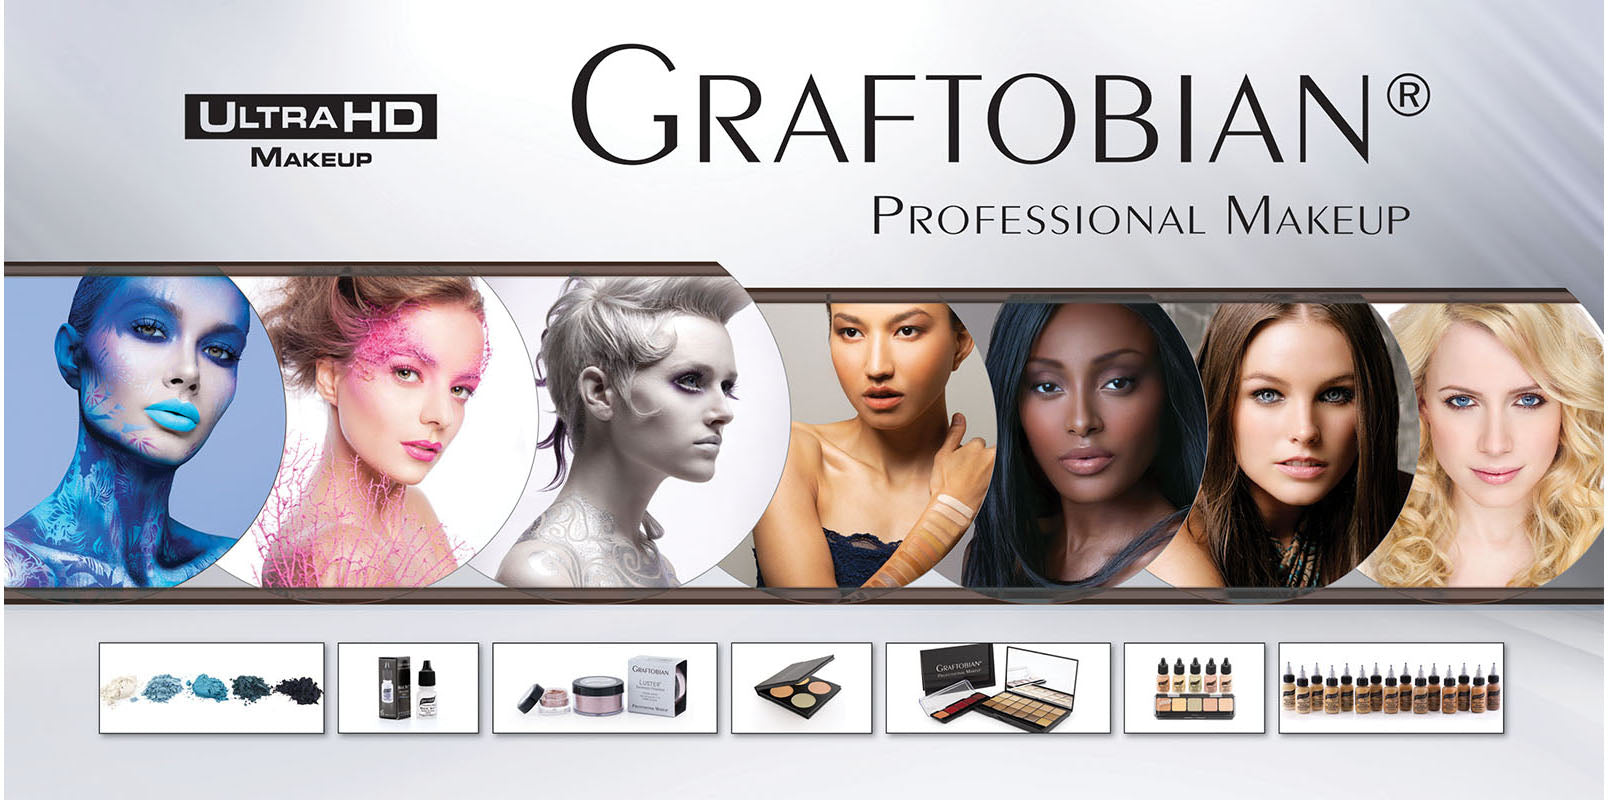 ProClass Ultra HD Makeup Kit – Graftobian Make-Up Company